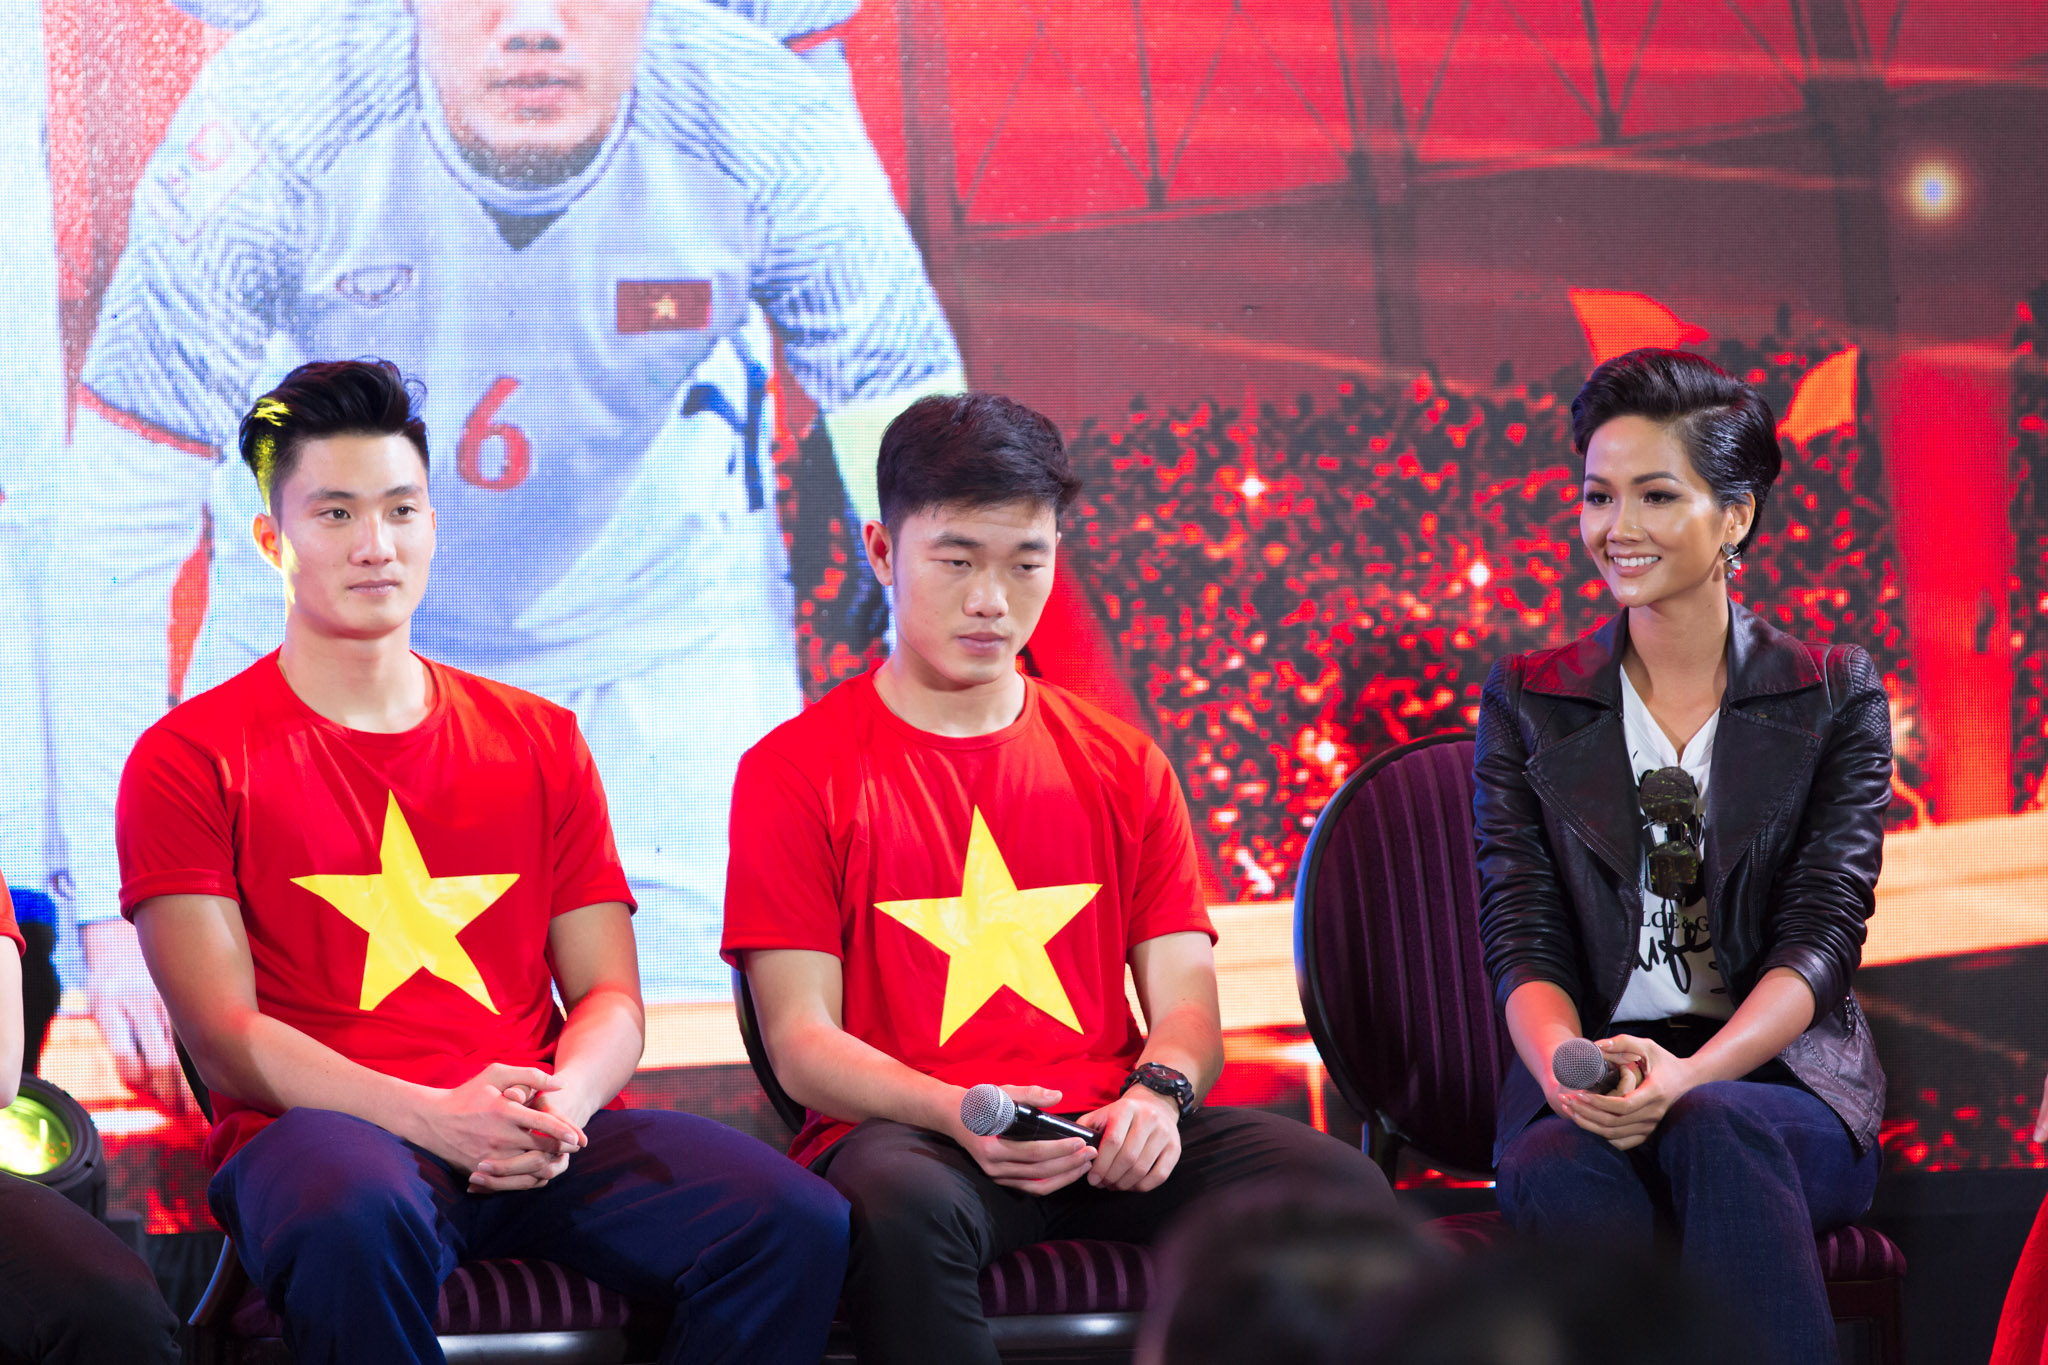 Tân Hoa hậu Hoàn vũ Hhen Niê thân thiết bên cầu thủ Quang Hải 1